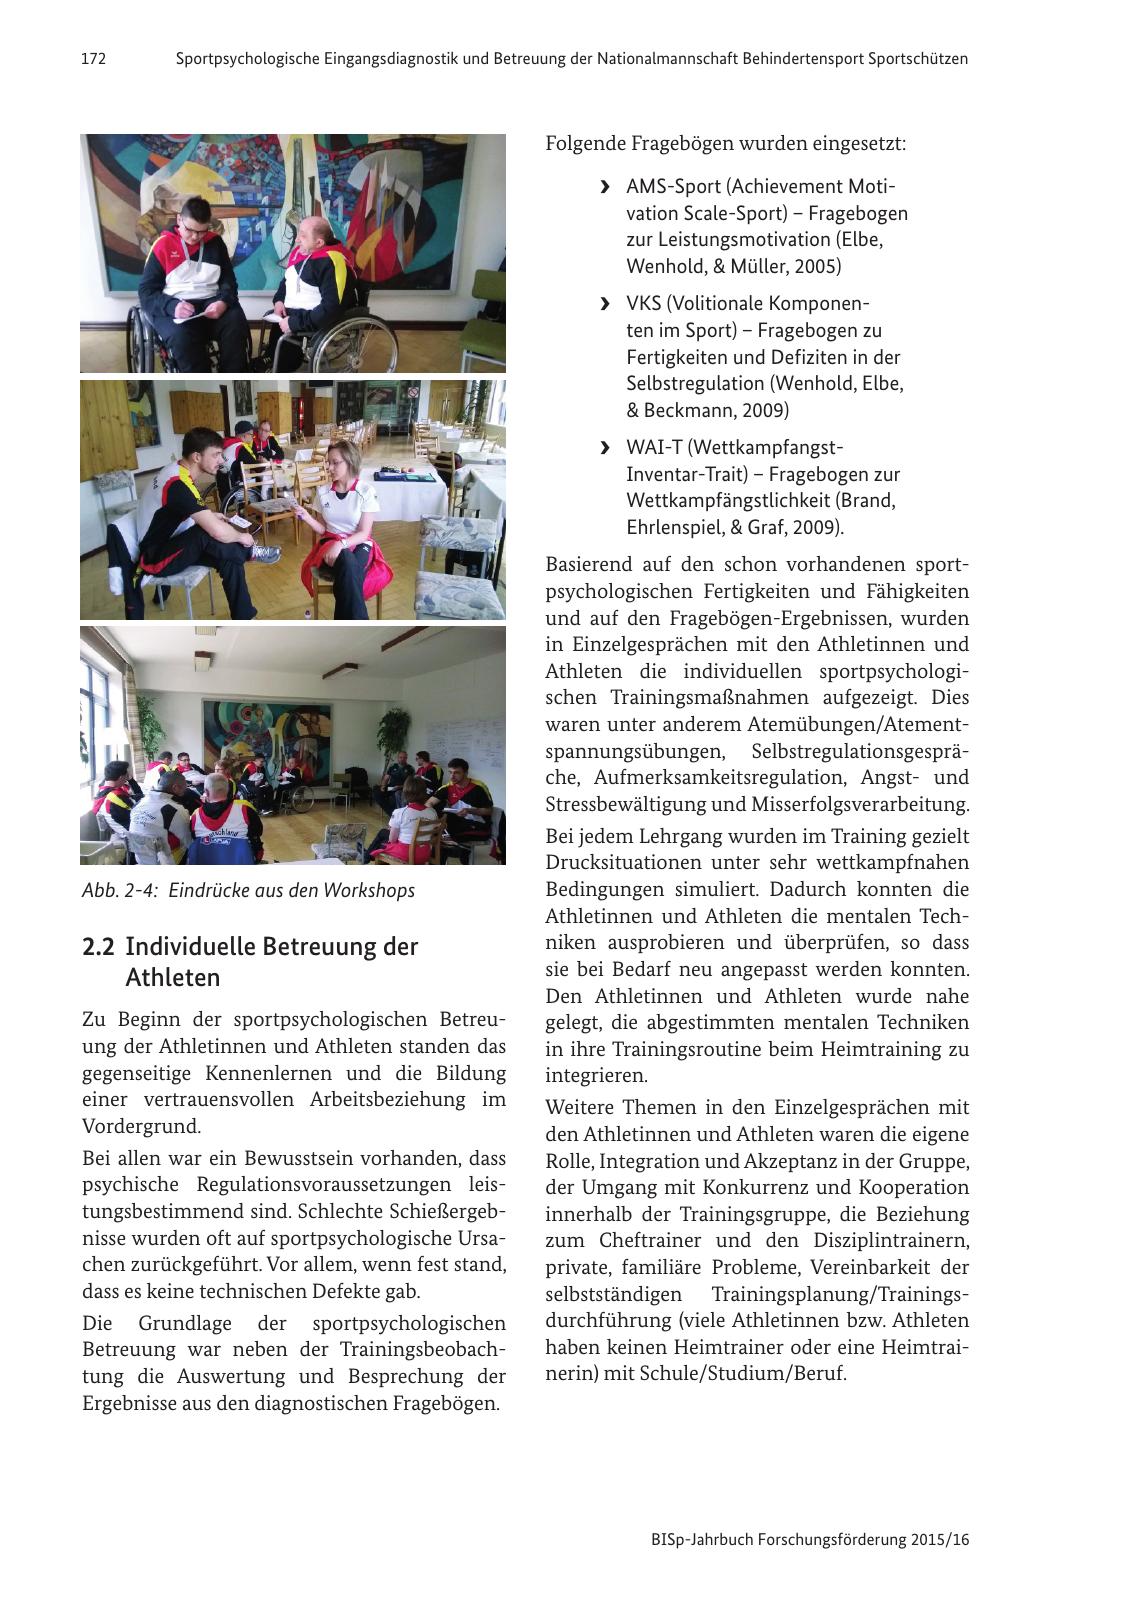 Vorschau BISp-Jahrbuch Forschungsförderung 2015/16 Seite 174